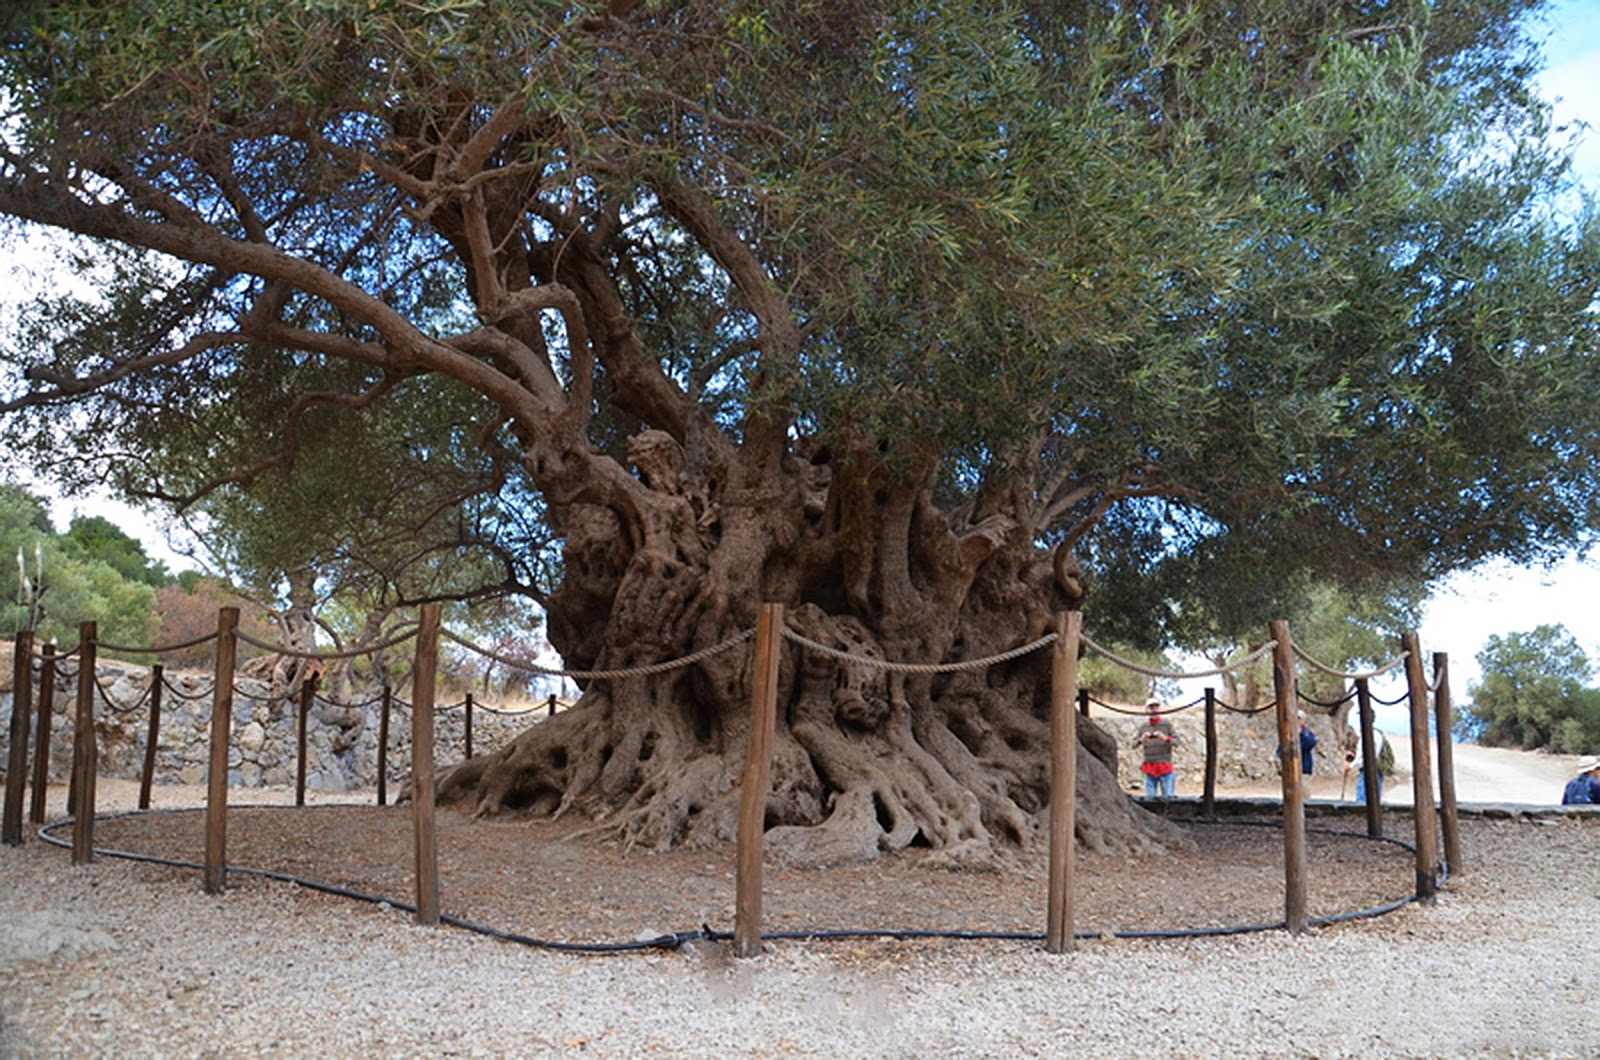 Ελαιόλαδο από αρχαία ελαιόδεντρα της Κρήτης τυποποιει πρωτοπόρος συνεταιρισμός στην Ιεράπετρα (pics)